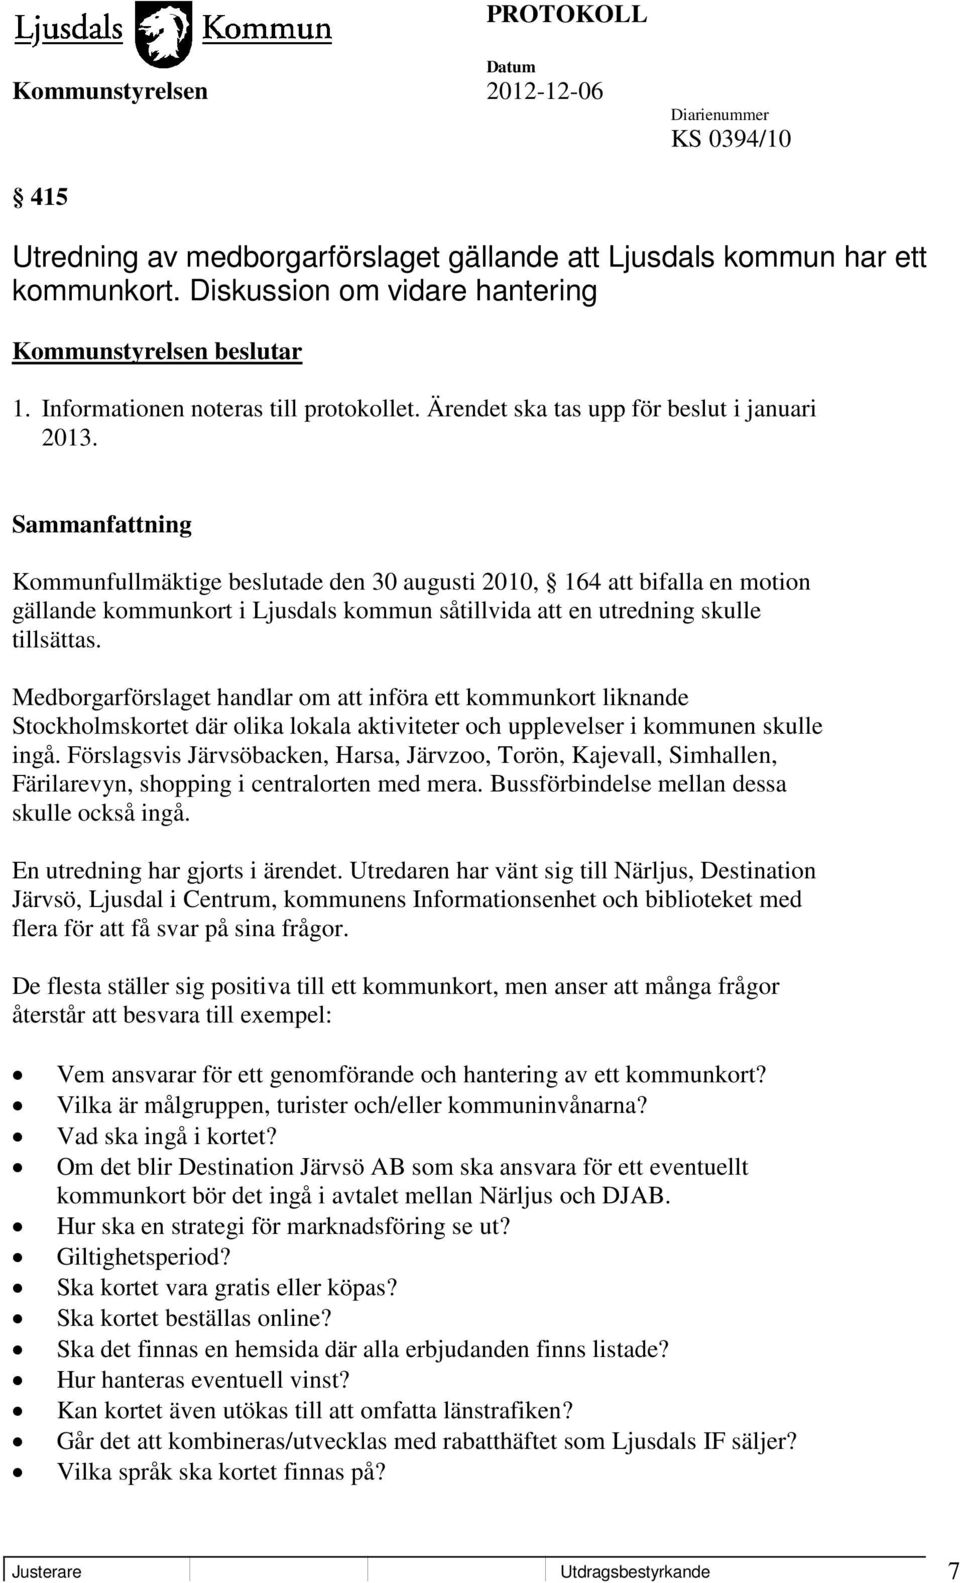 Kommunfullmäktige beslutade den 30 augusti 2010, 164 att bifalla en motion gällande kommunkort i Ljusdals kommun såtillvida att en utredning skulle tillsättas.